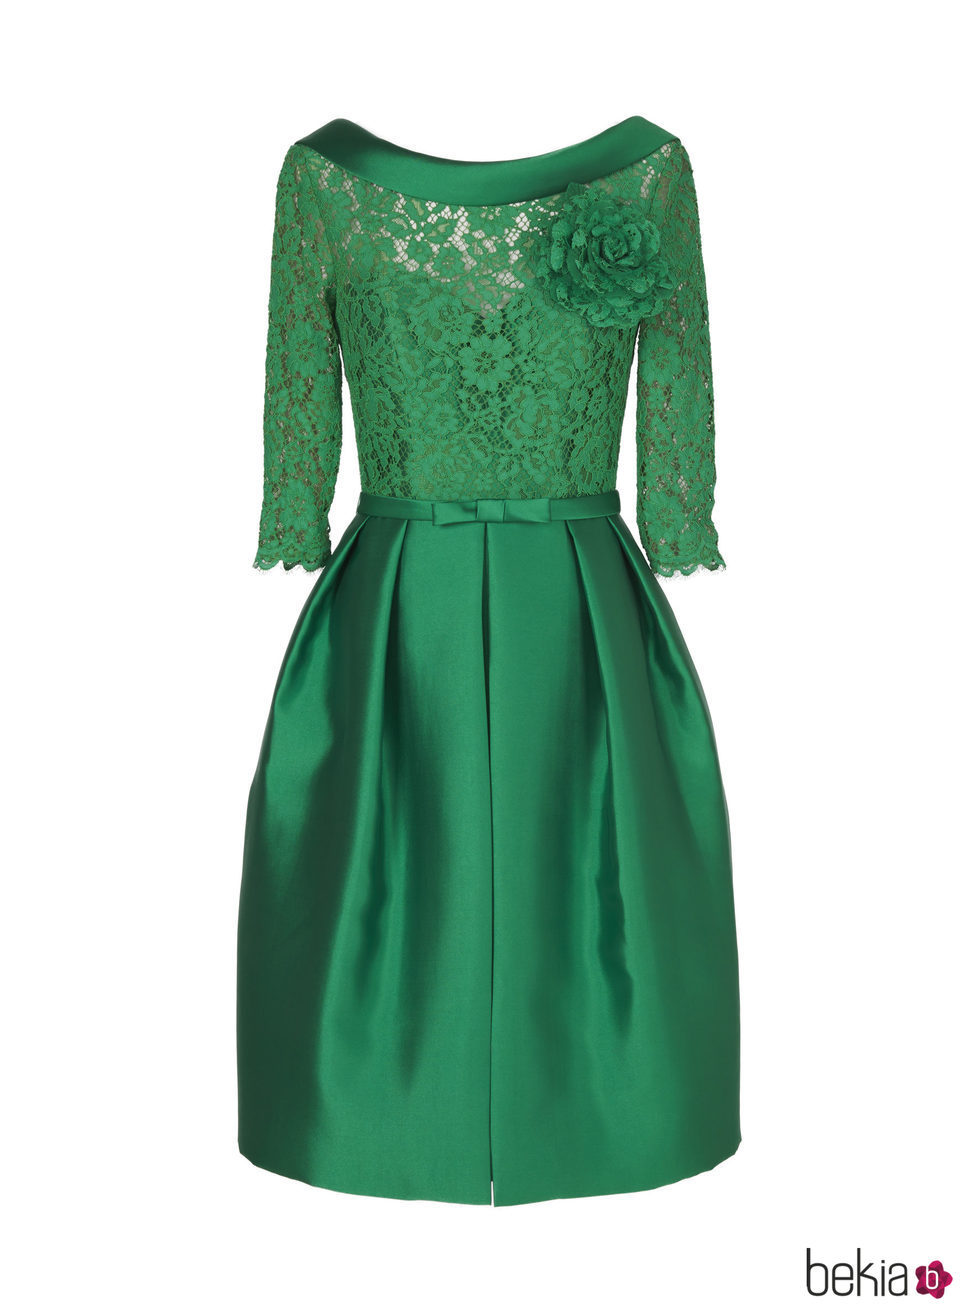 Vestido corto verde de la nueva colección de fiesta de Pronovias 2018